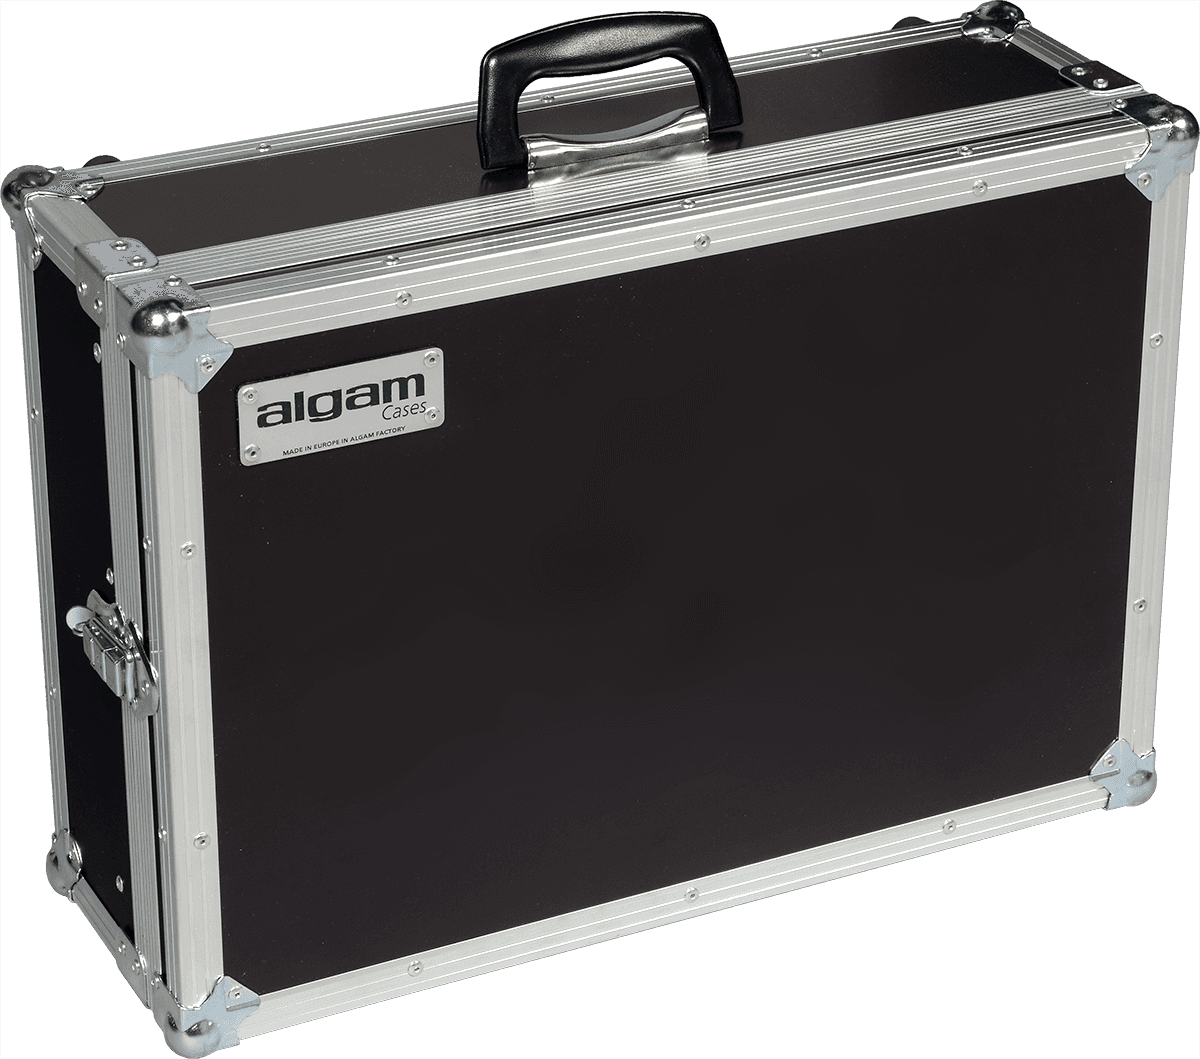 Algam Mixer-8u - Cajas de mezcladores - Main picture